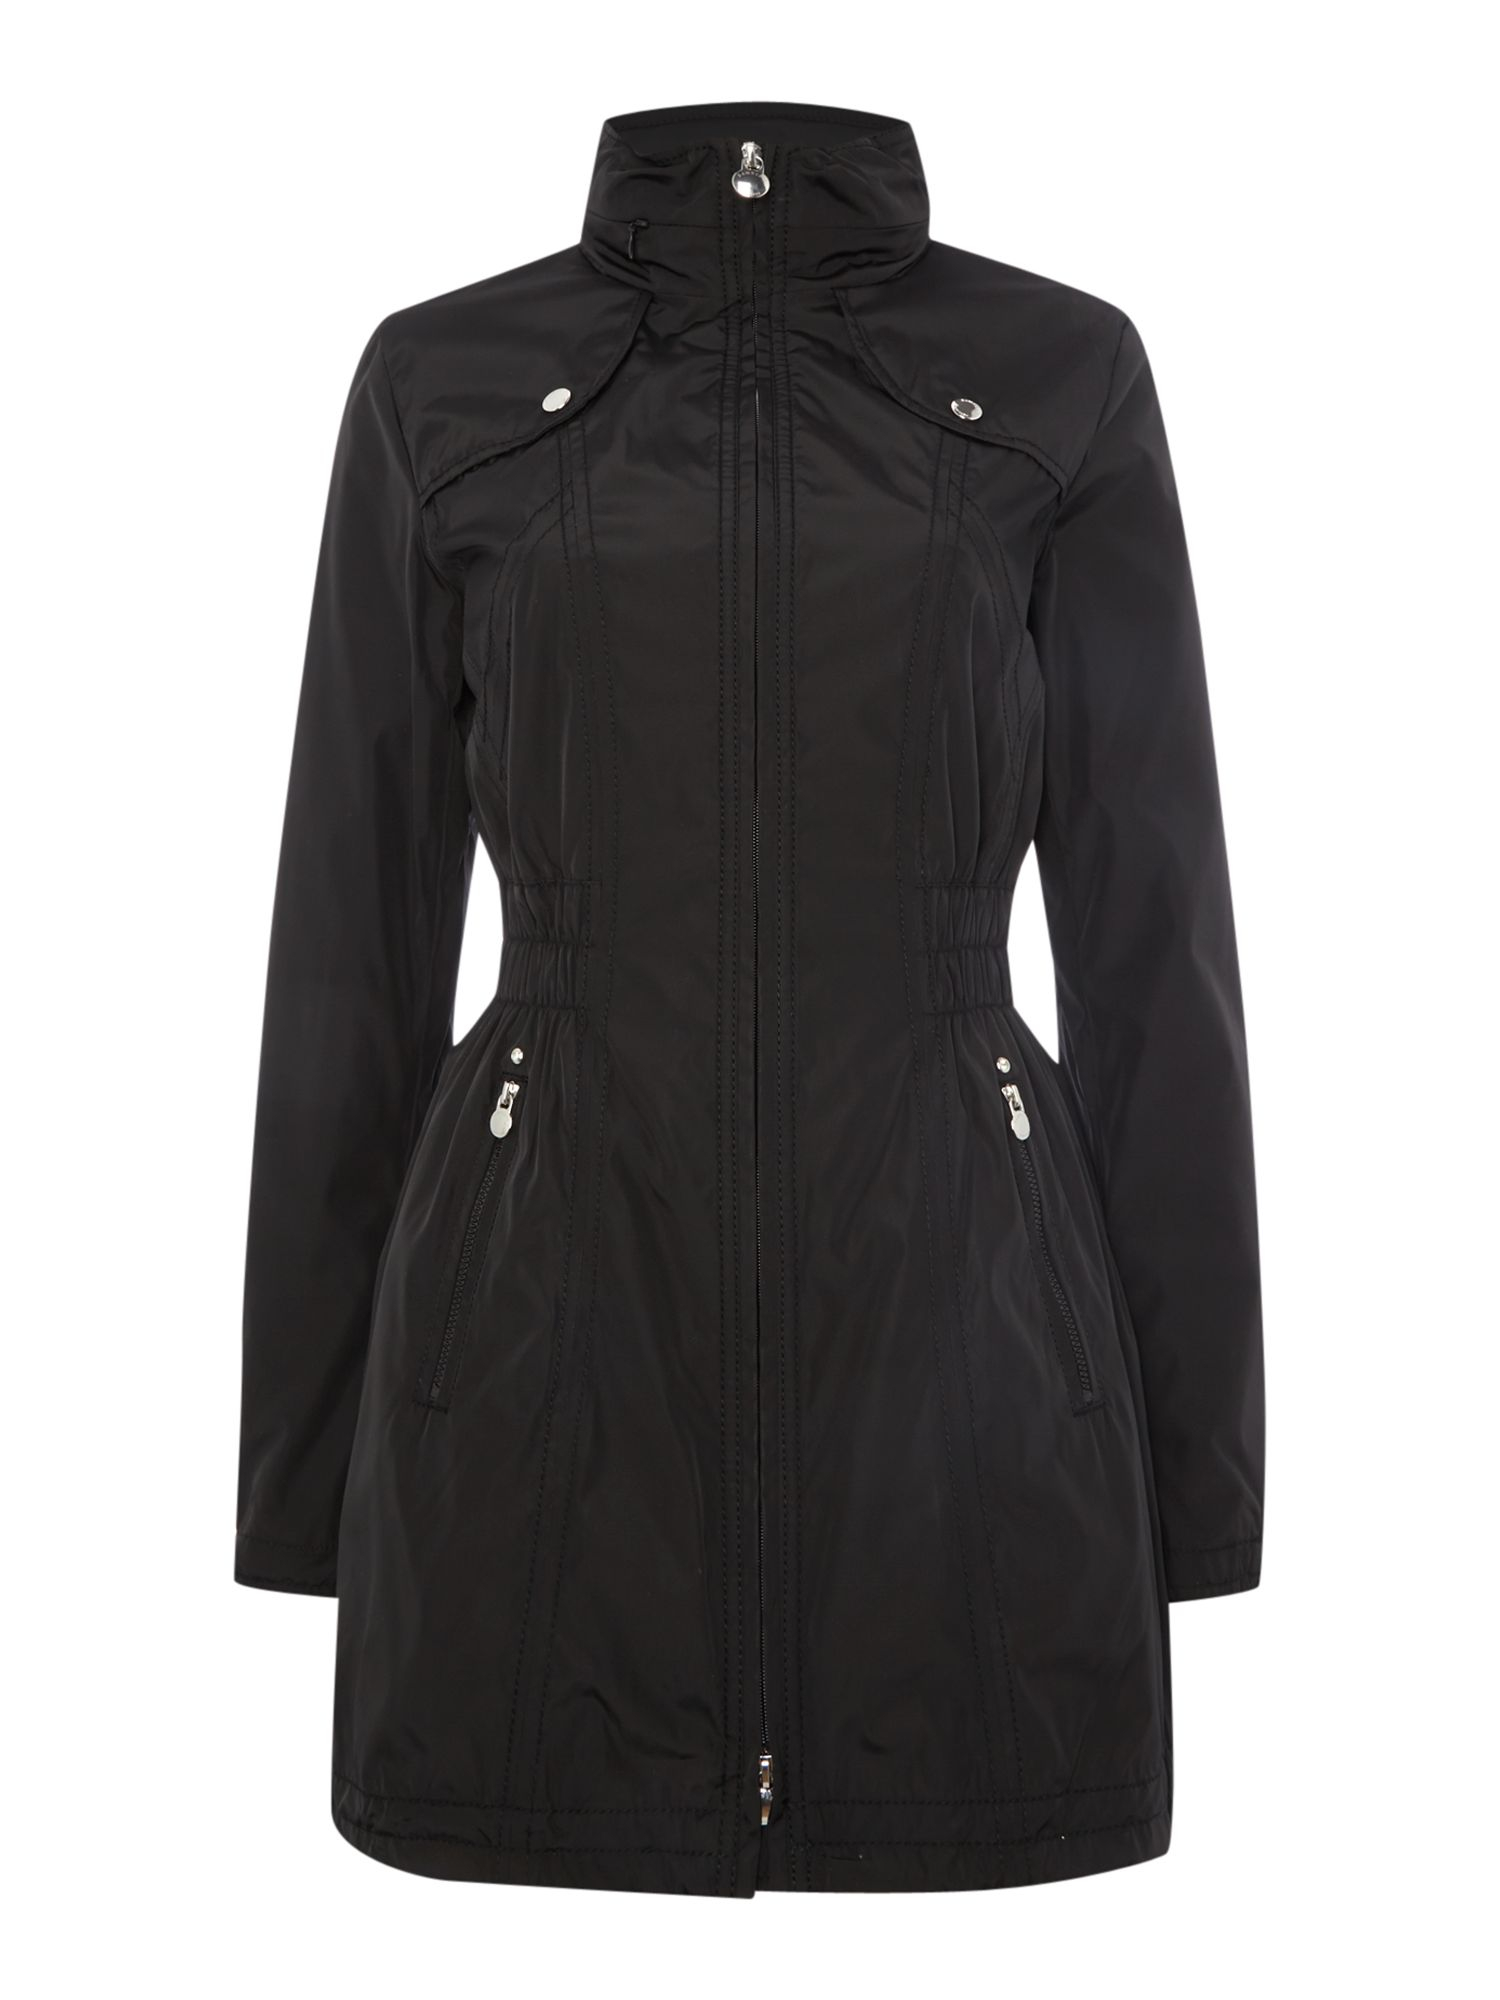 Dawn Levy Windbreaker Jacket With Hidden Hood in Black | Lyst